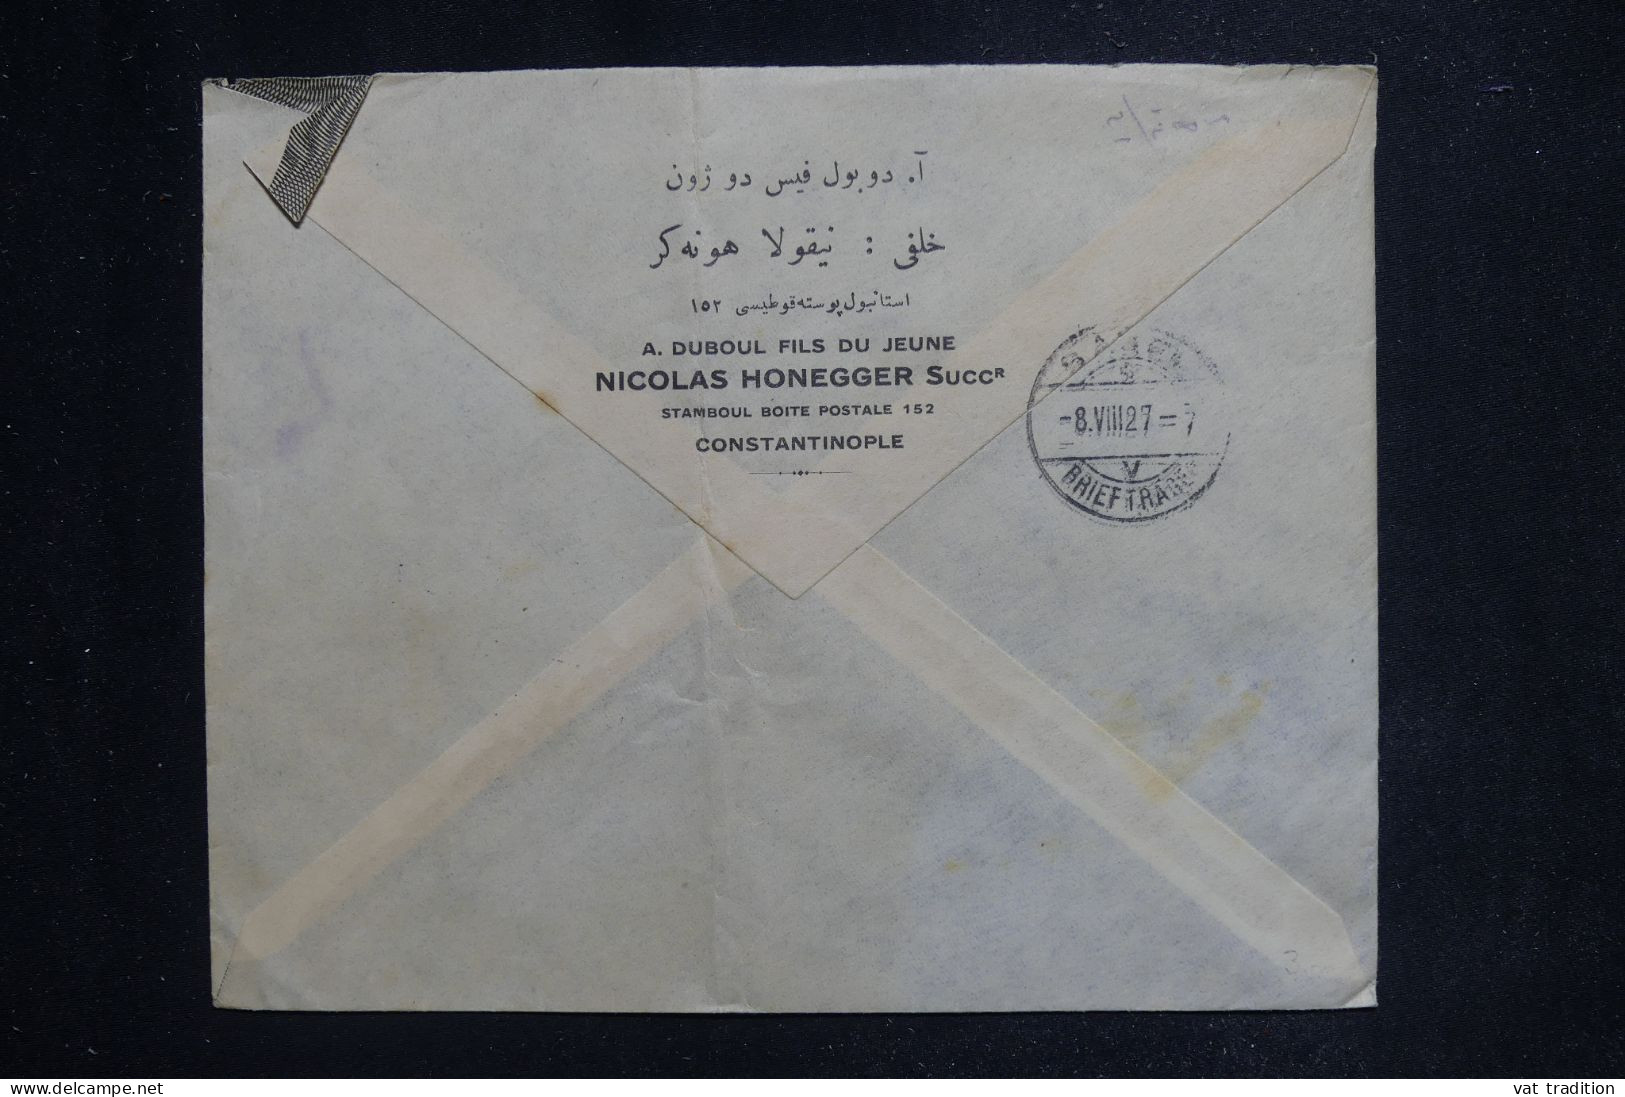 TURQUIE - Enveloppe  Commerciale En Recommandé De Istanbul Pour La Suisse En 1927 - L 144320 - Storia Postale